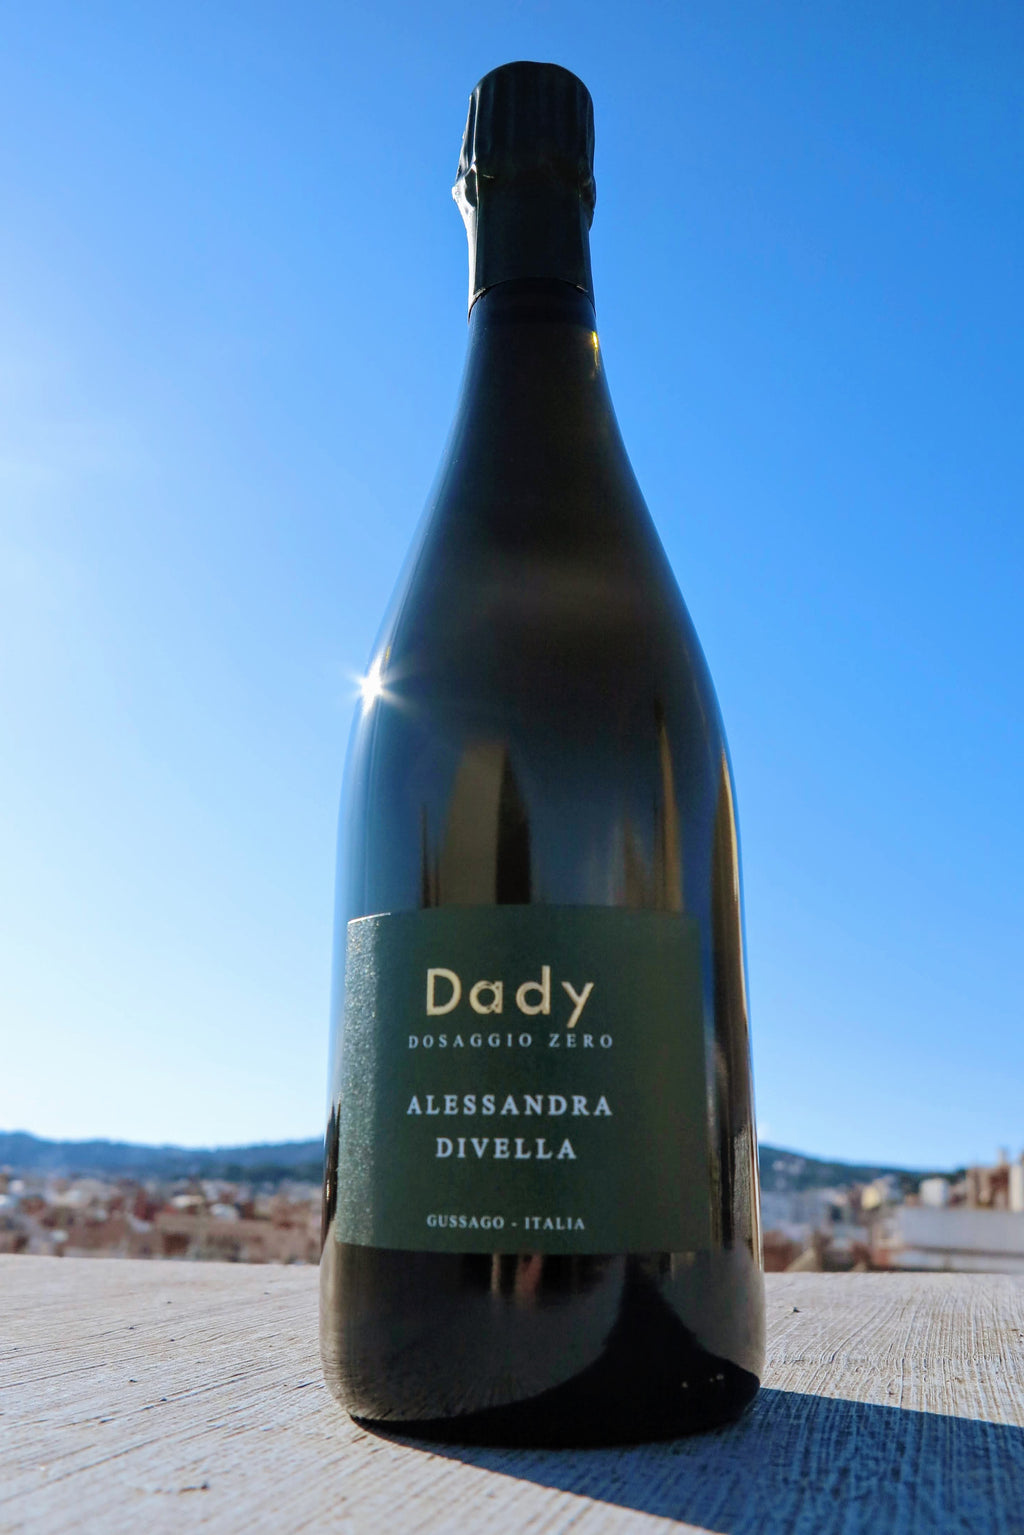 Alessandra Divella - Dady no dosificado - 100 % Chardonnay 2020